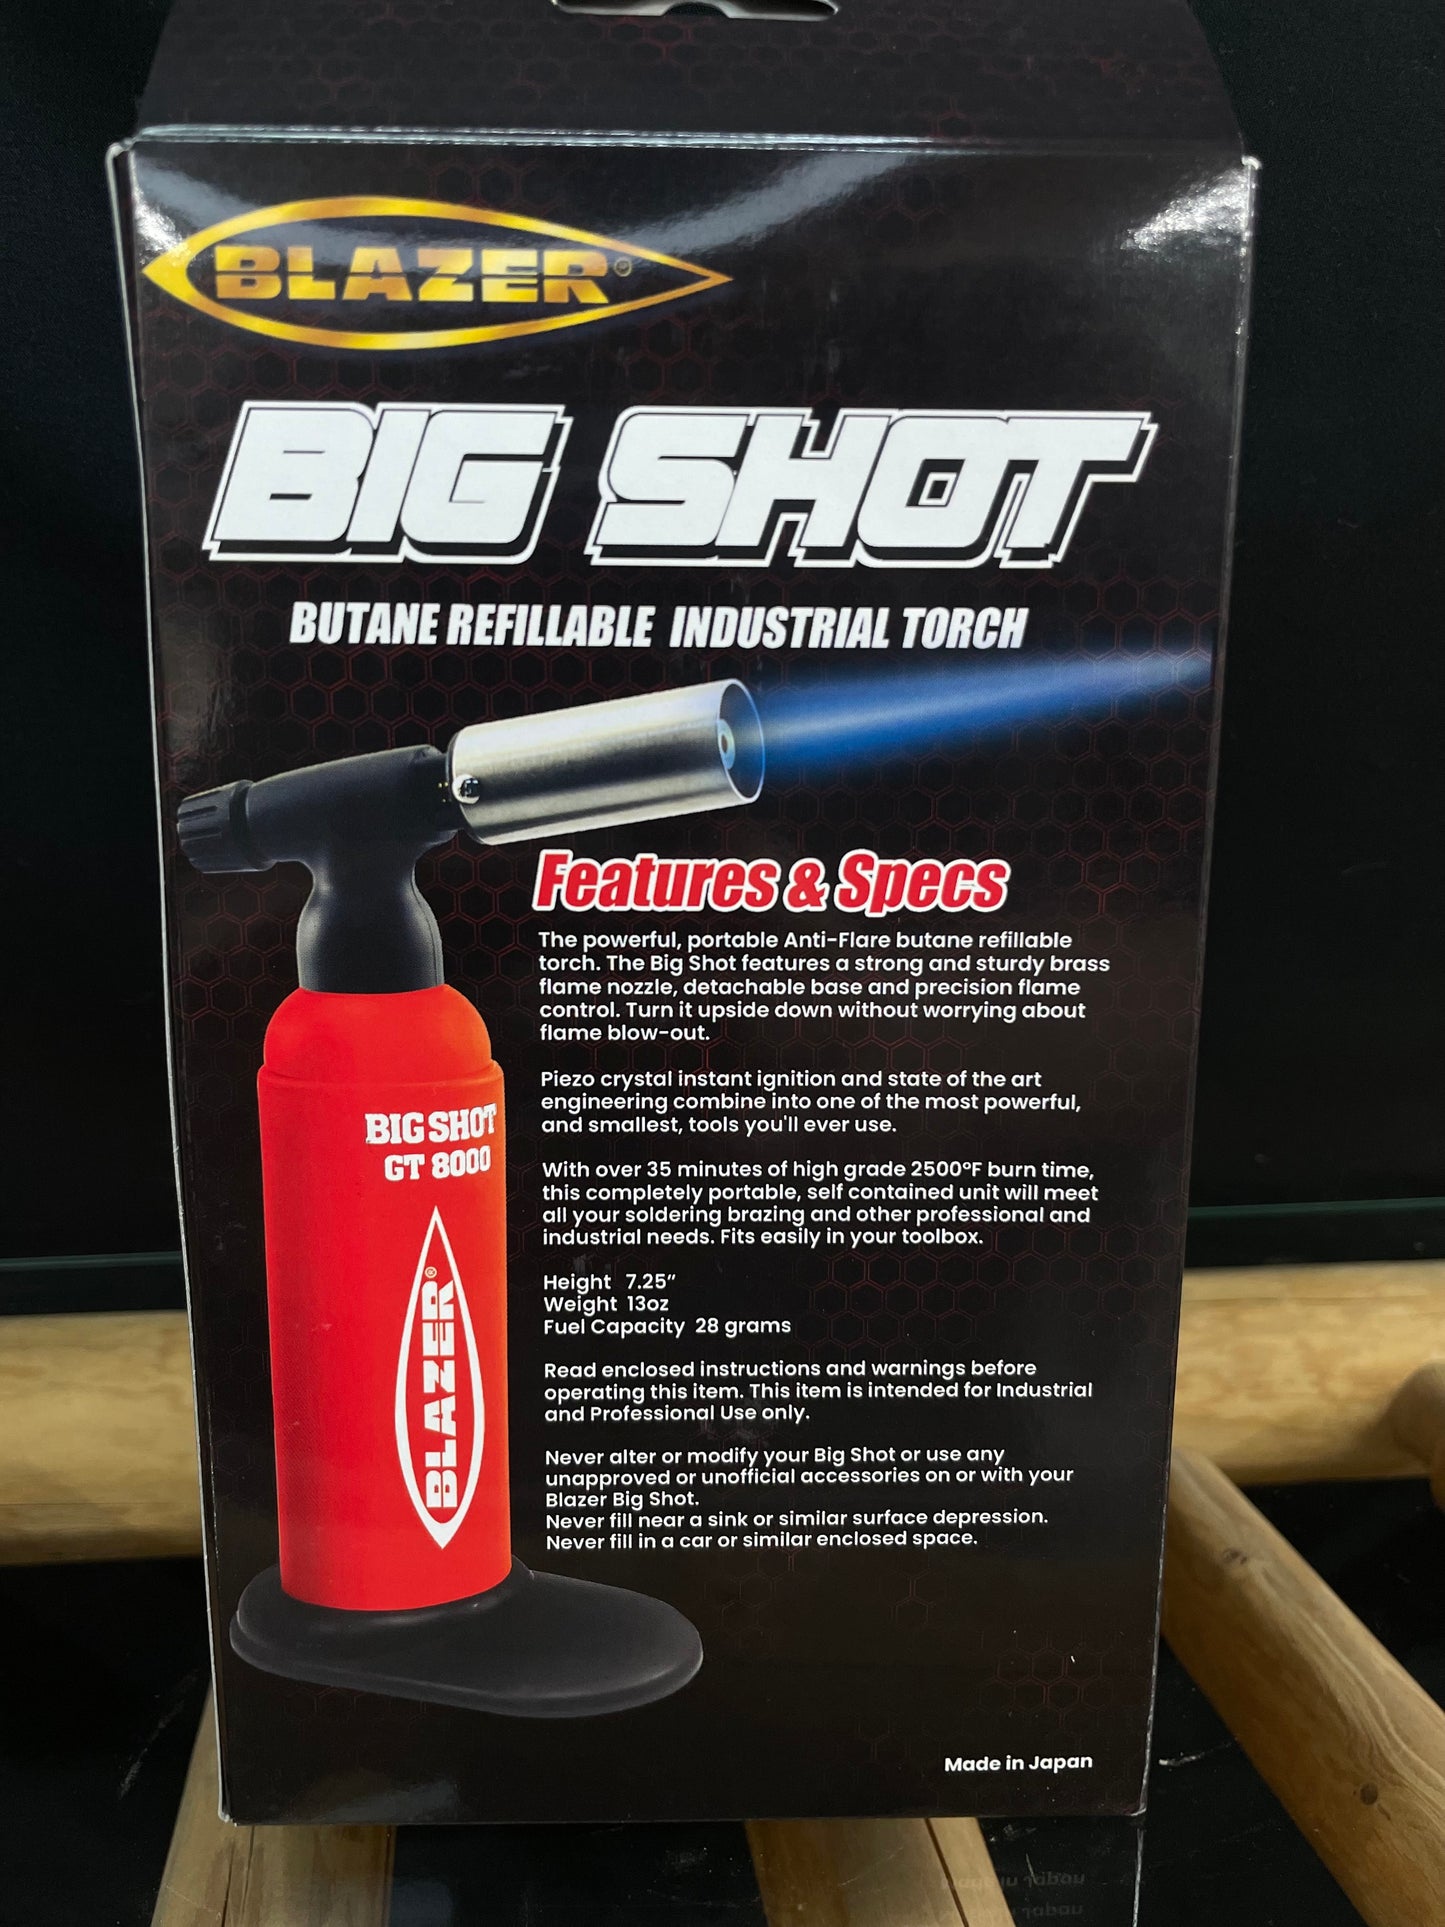 Blazer - Big Shot Industrial Torch